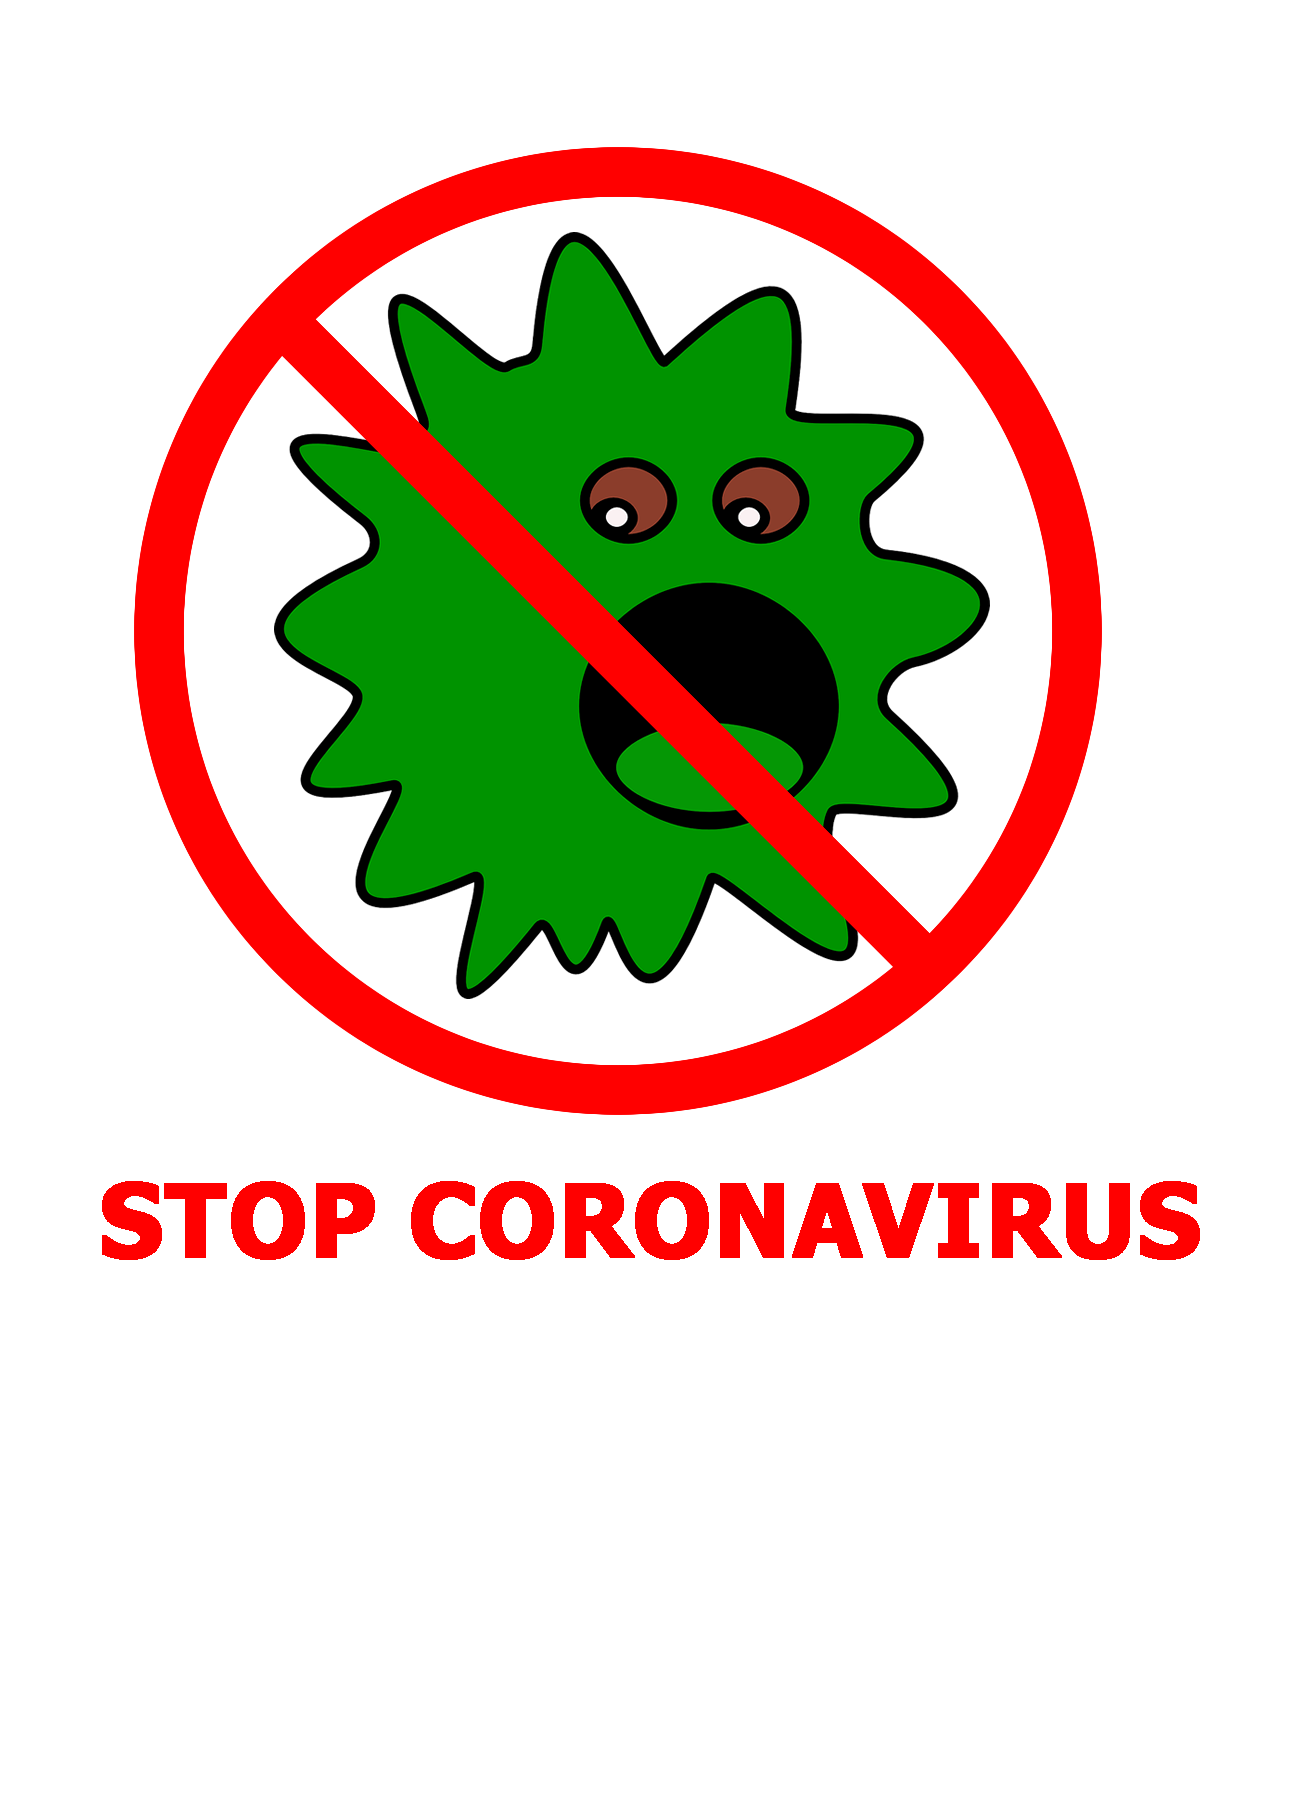 Pare o novo vírus da coroa!